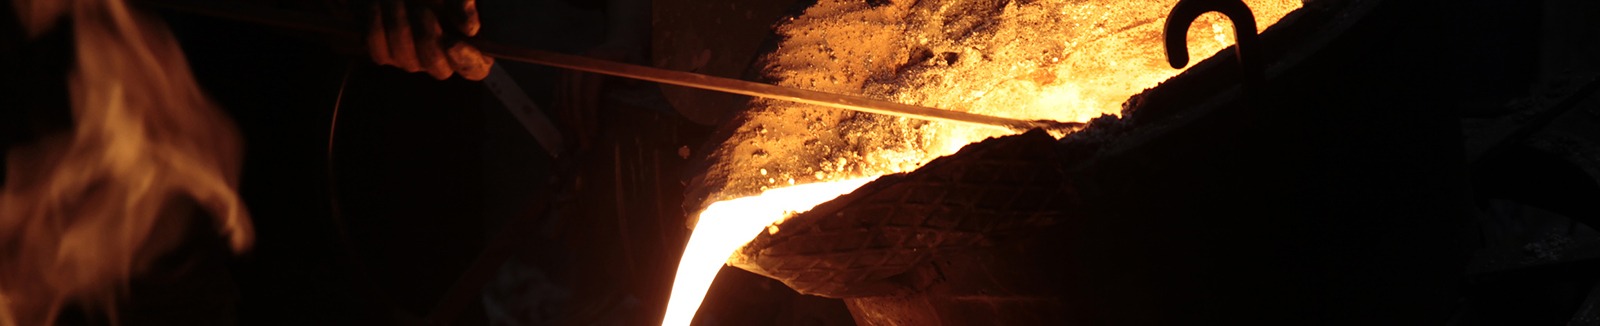 metalurji endüstrisi için uygulanabilir süreç kontrolü